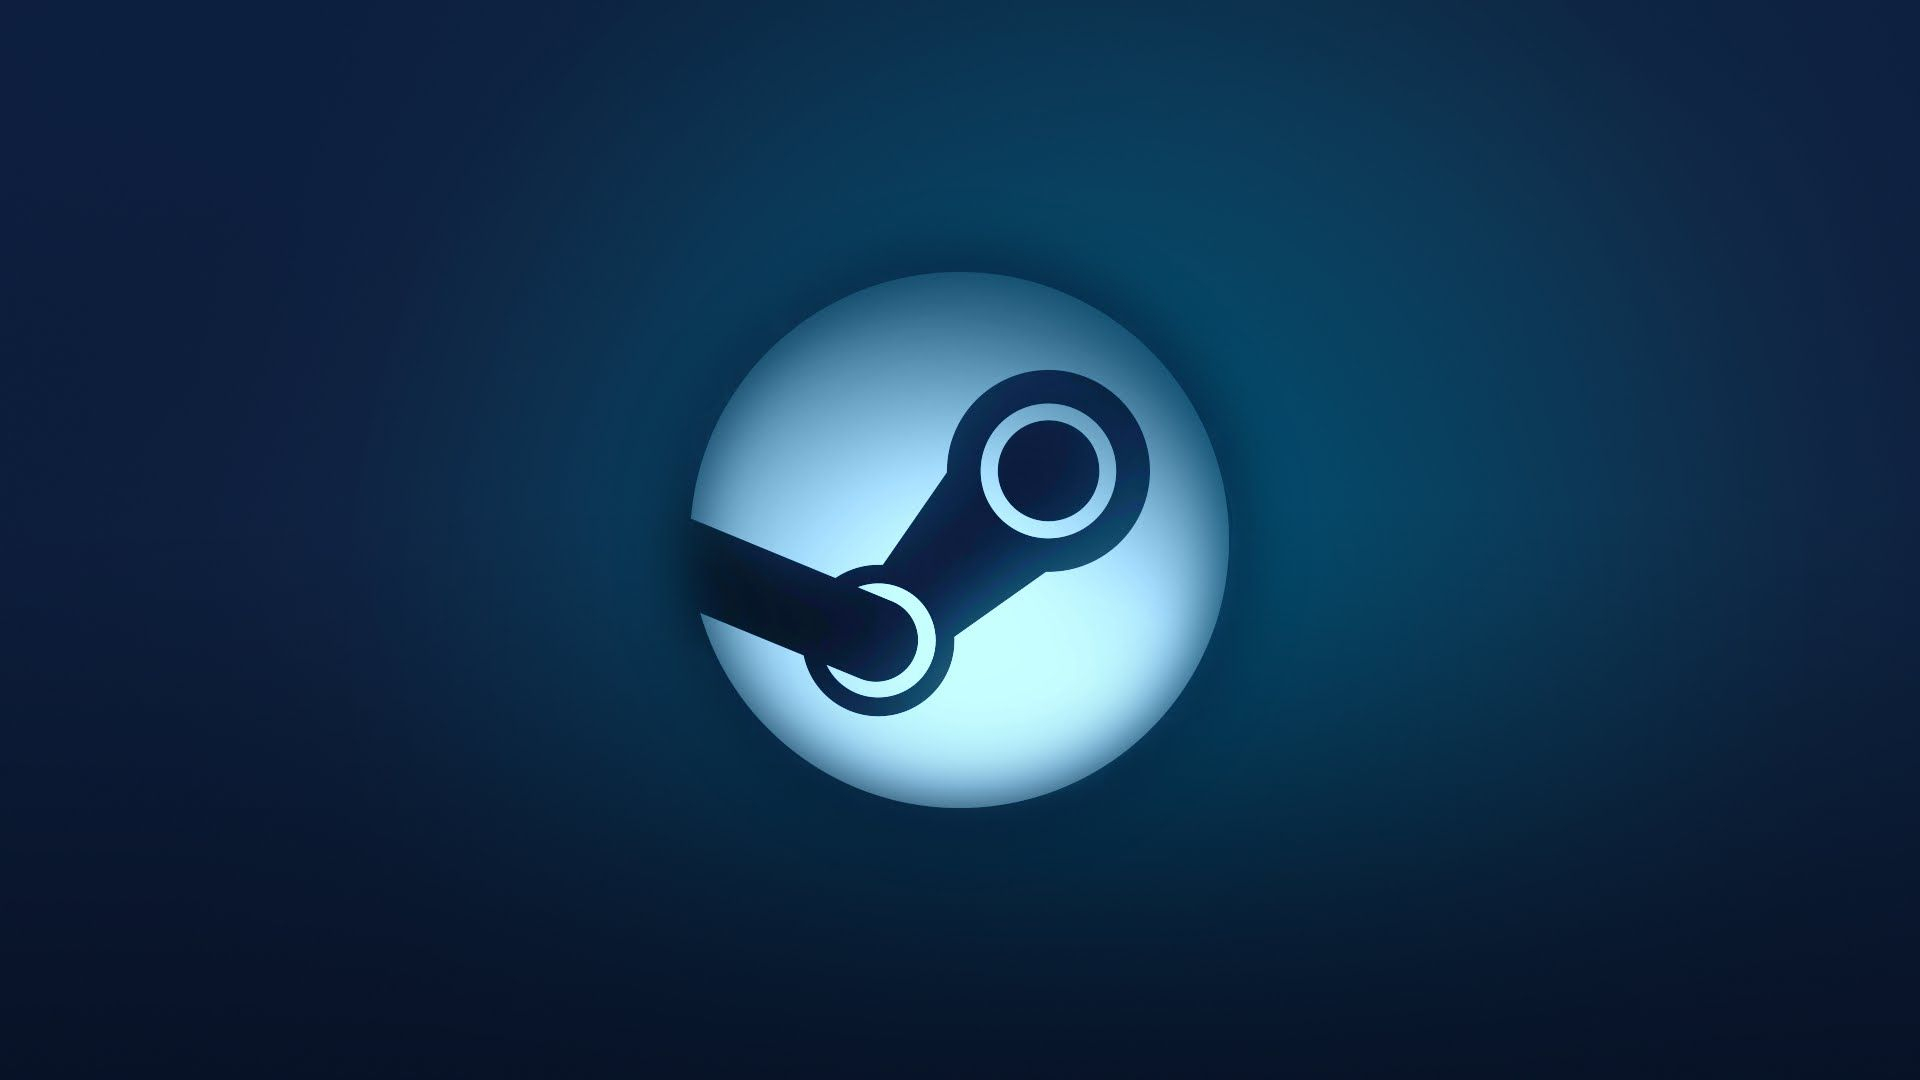 Valve slutar officiellt att stödja Steam på Windows 7, 8 och 8.1